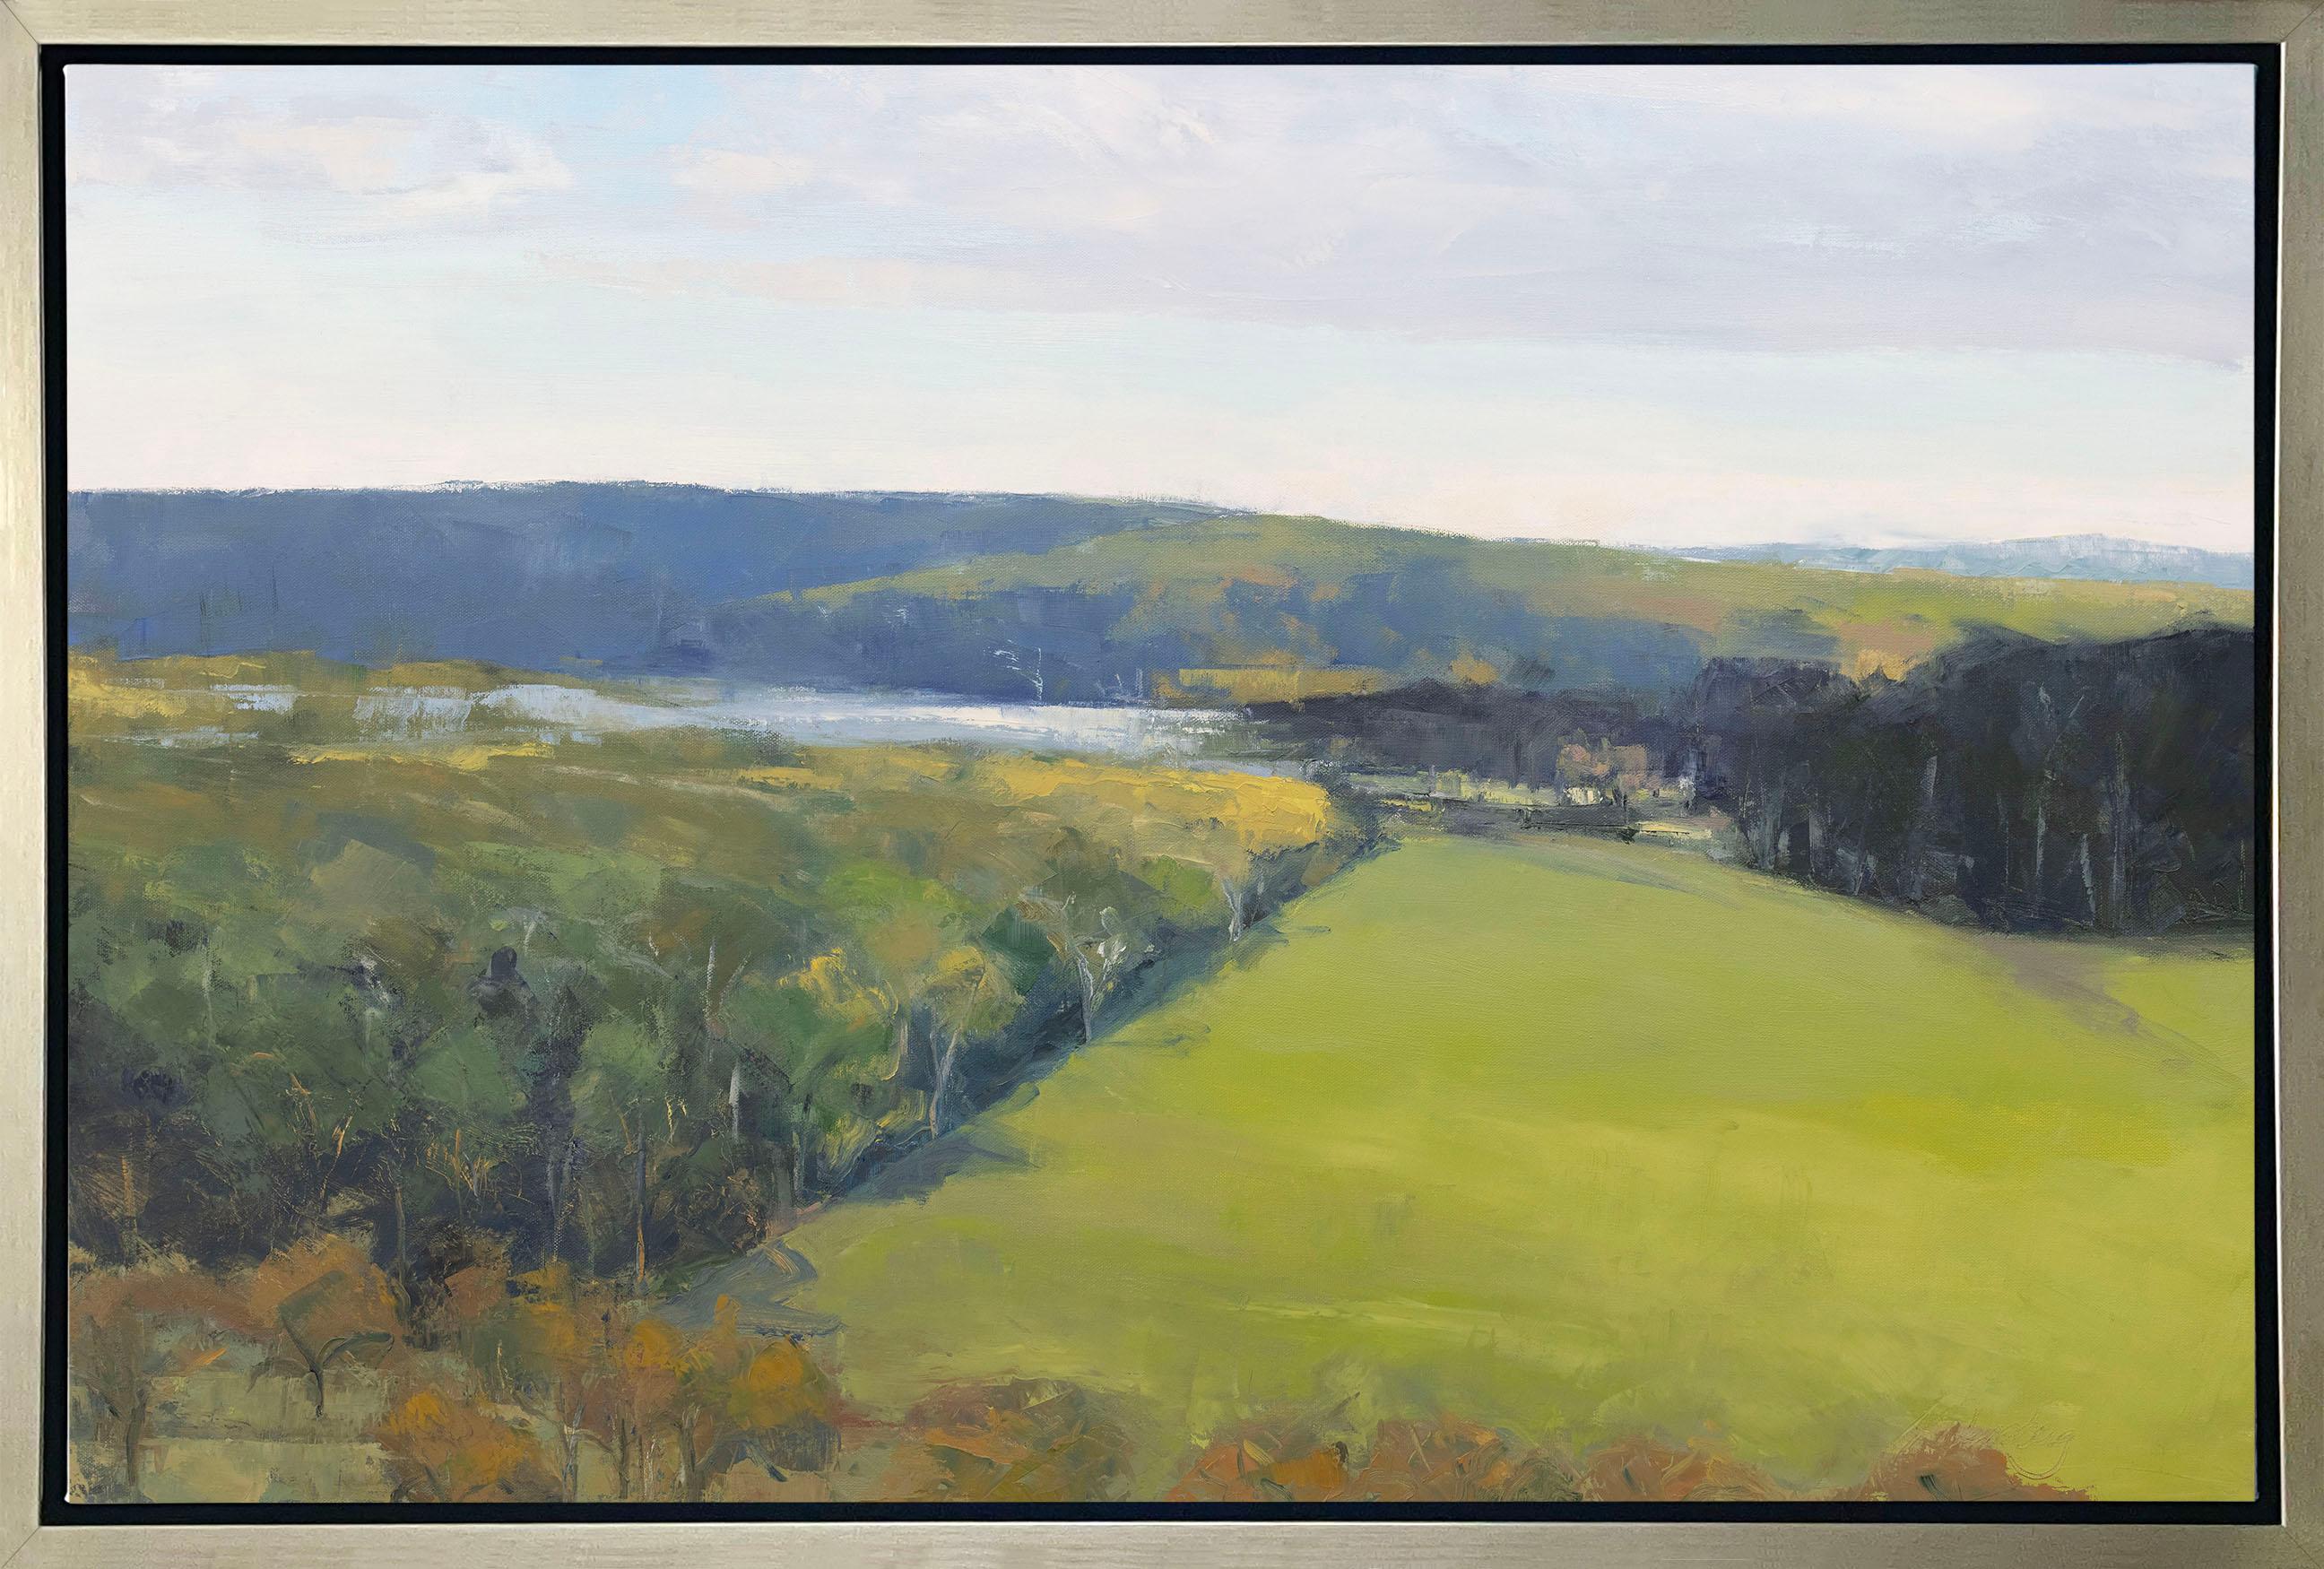 Diese limitierte Auflage des Giclée-Landschaftsdrucks von Molly Doe Wensberg hat eine Auflagenhöhe von 195. Es zeigt eine kühle blaue, grüne und gelbe Farbpalette und fängt eine Landschaftsszene mit üppigem Laub, sanften Hügeln und einem kleinen